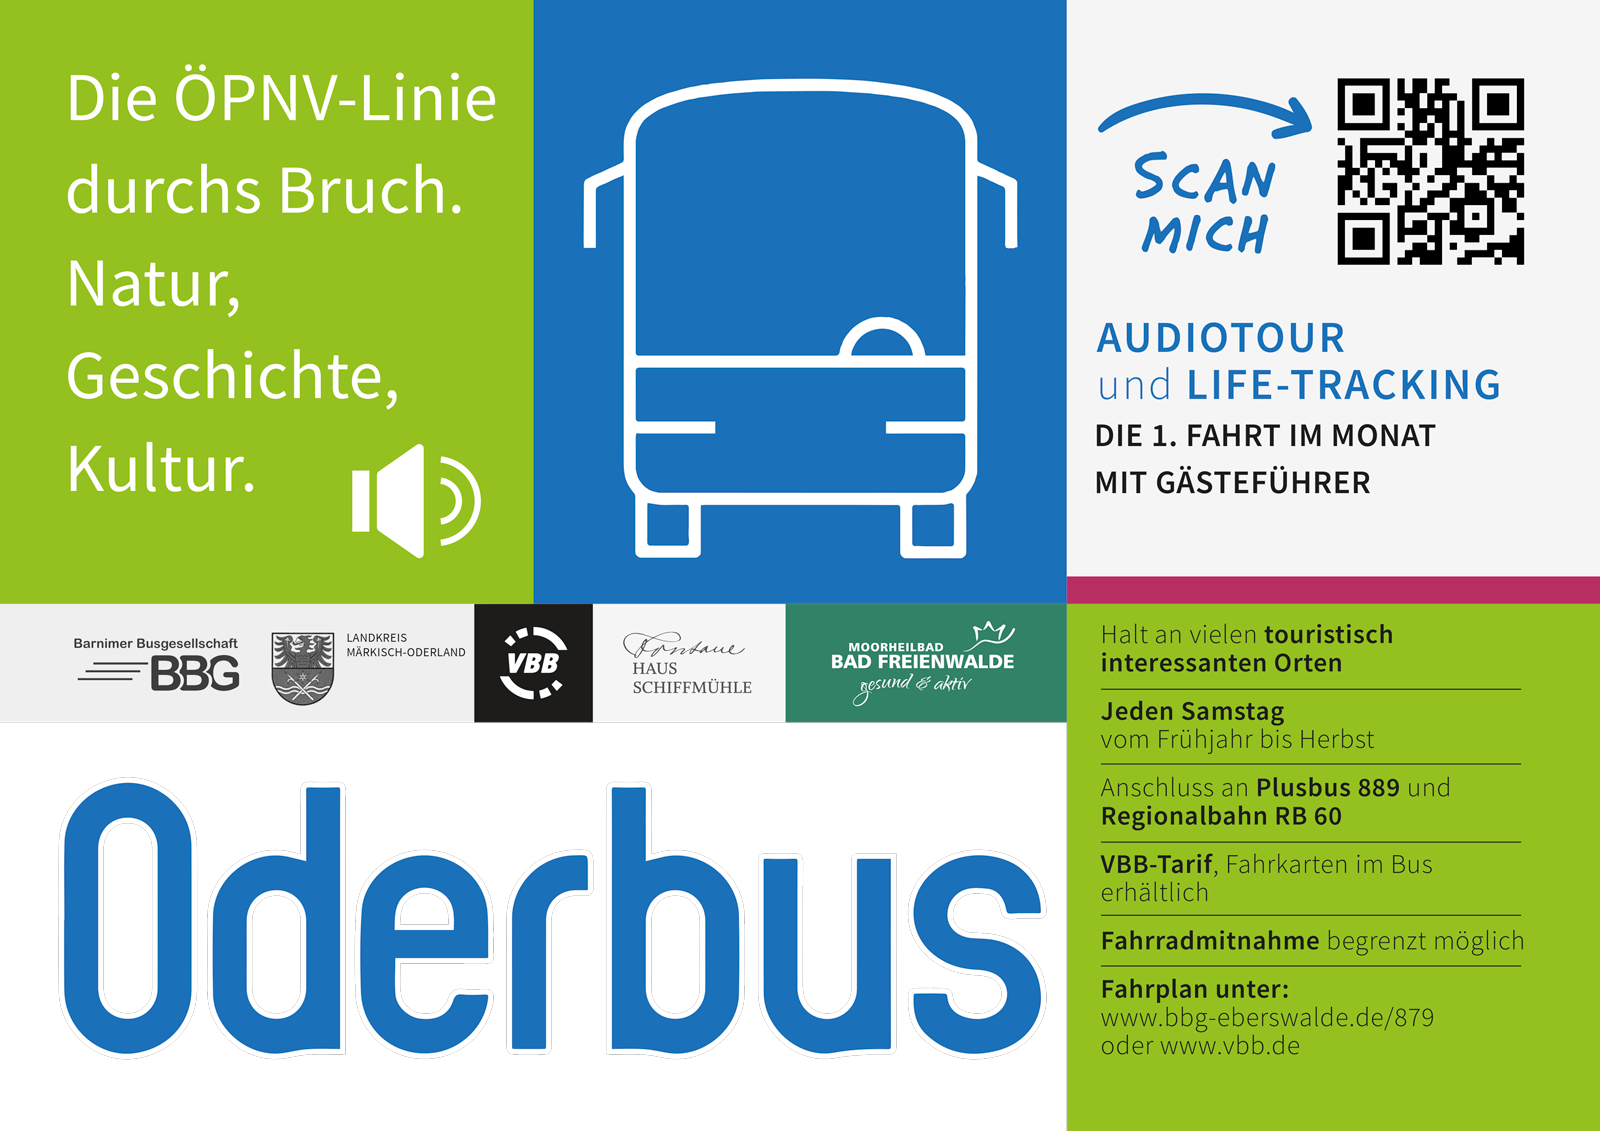 Plakat informacyjny Oderbus